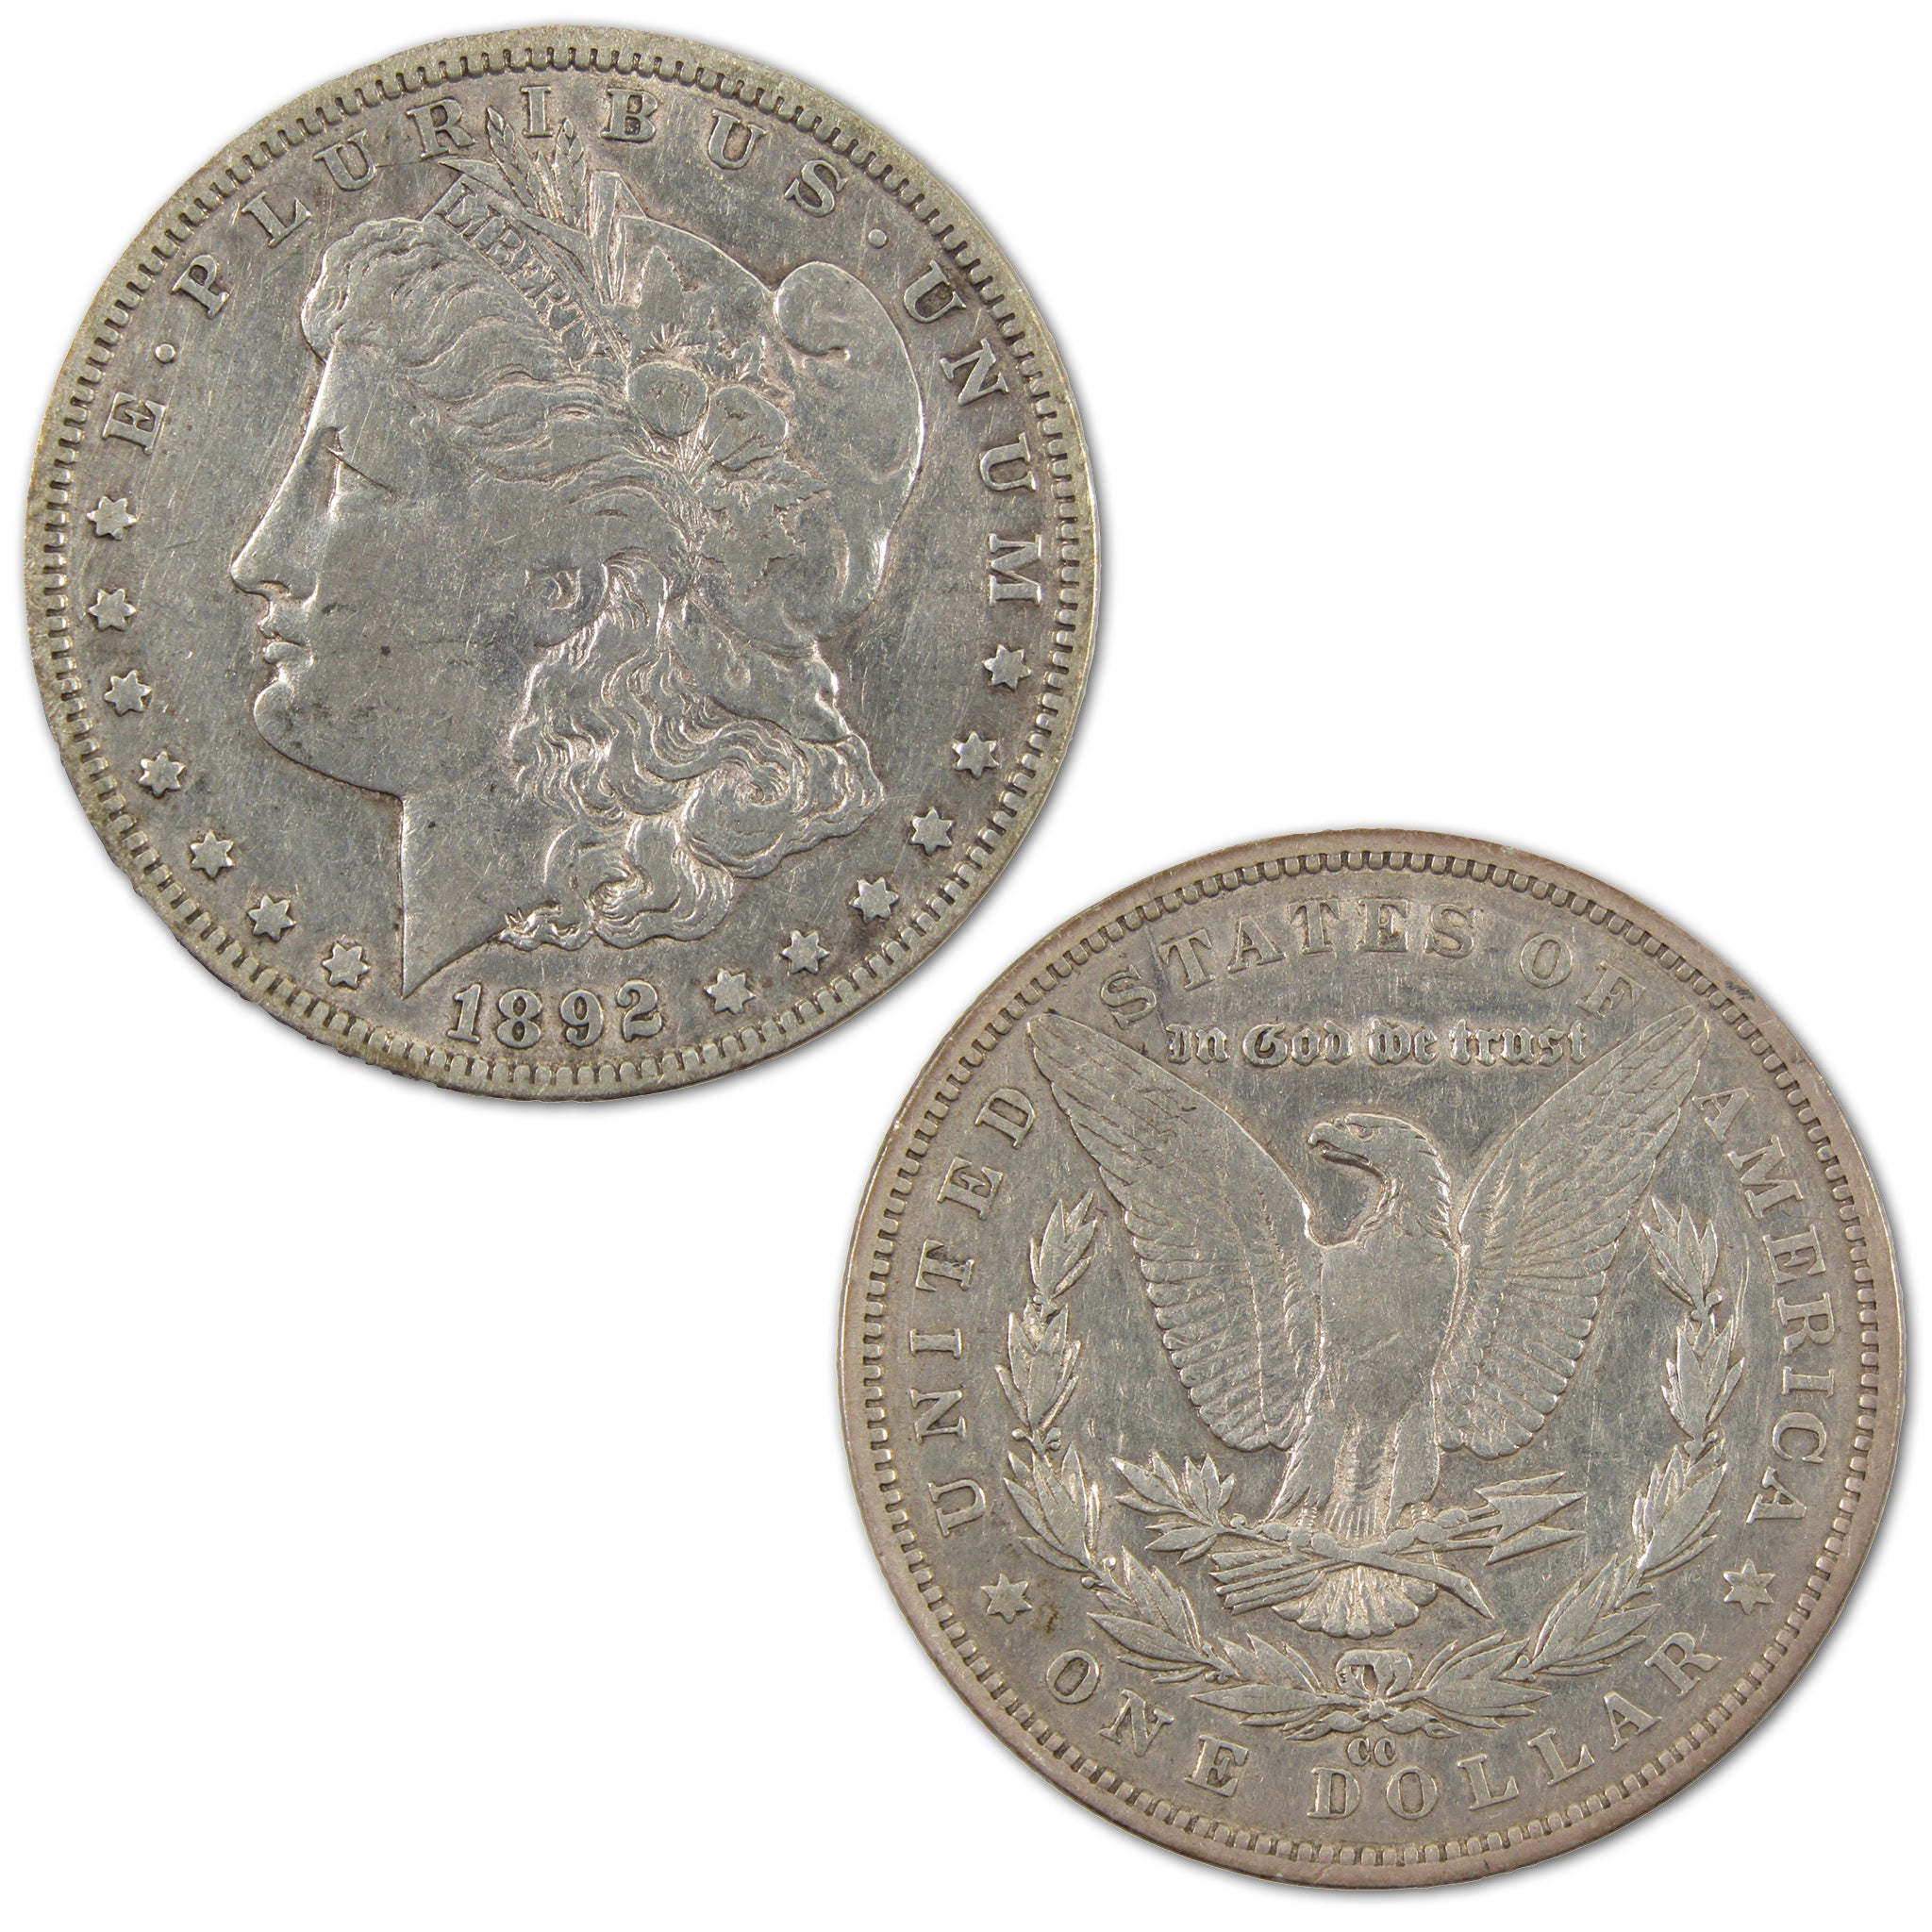 1892 CC Morgan Dollar XF EF Extremely Fine Details Silver SKU:I10763 - Morgan coin - Morgan silver dollar - Morgan silver dollar for sale - Profile Coins &amp; Collectibles